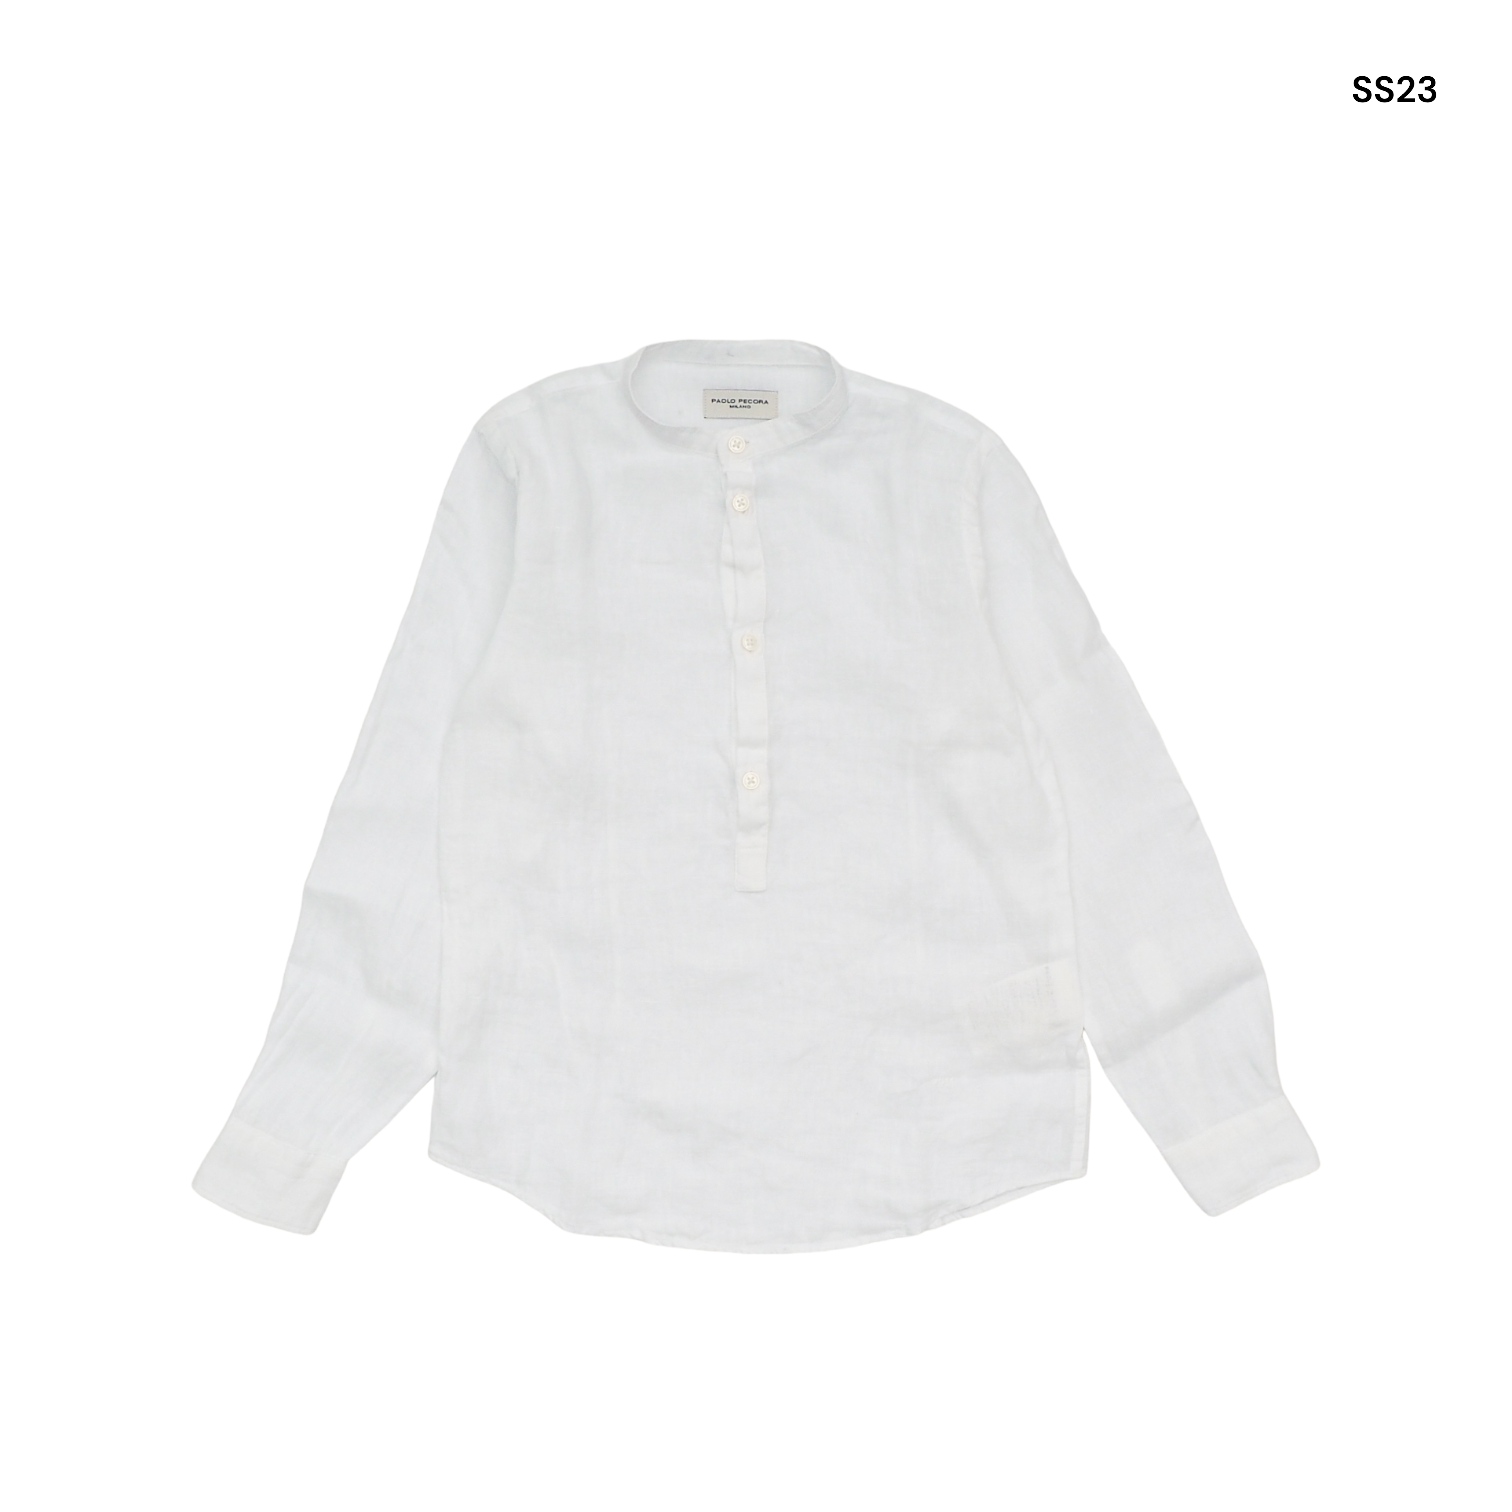 Camicia alla coreana bianca in lino per bambino